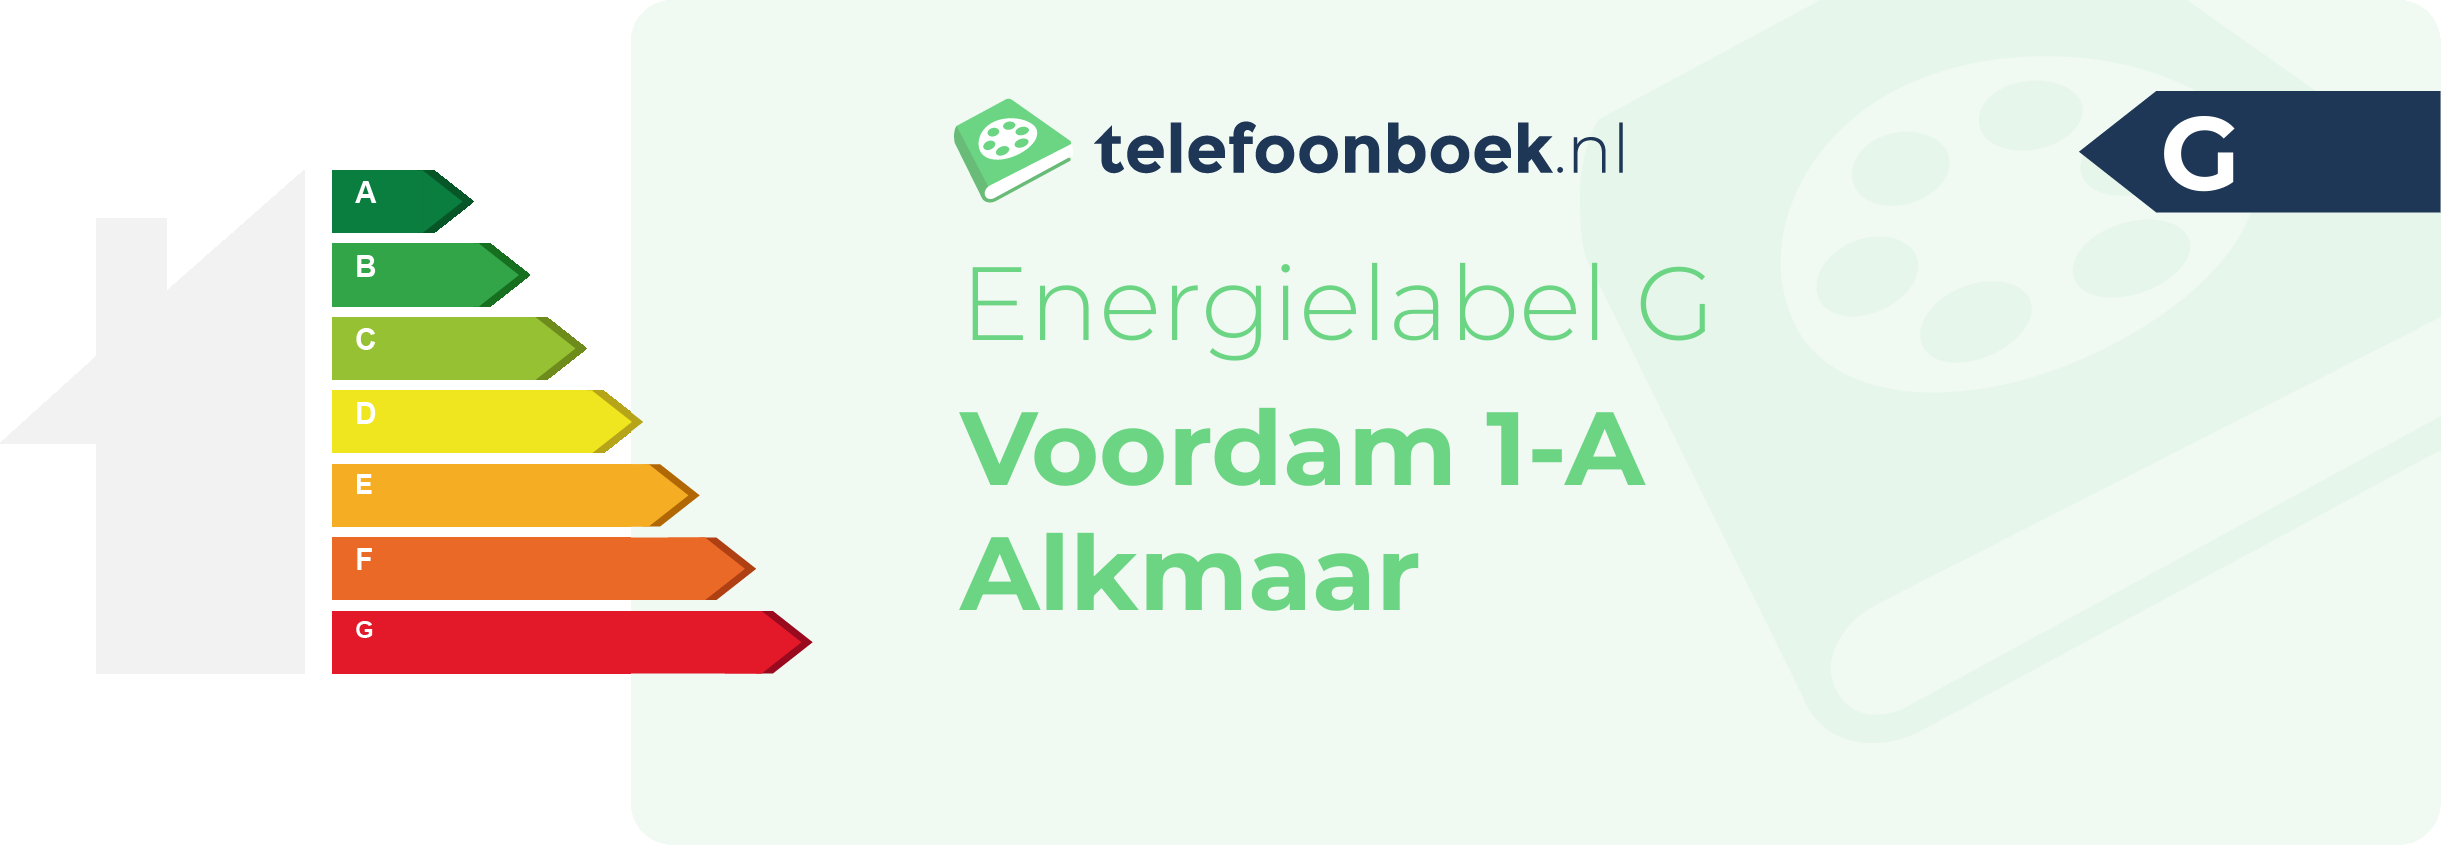 Energielabel Voordam 1-A Alkmaar